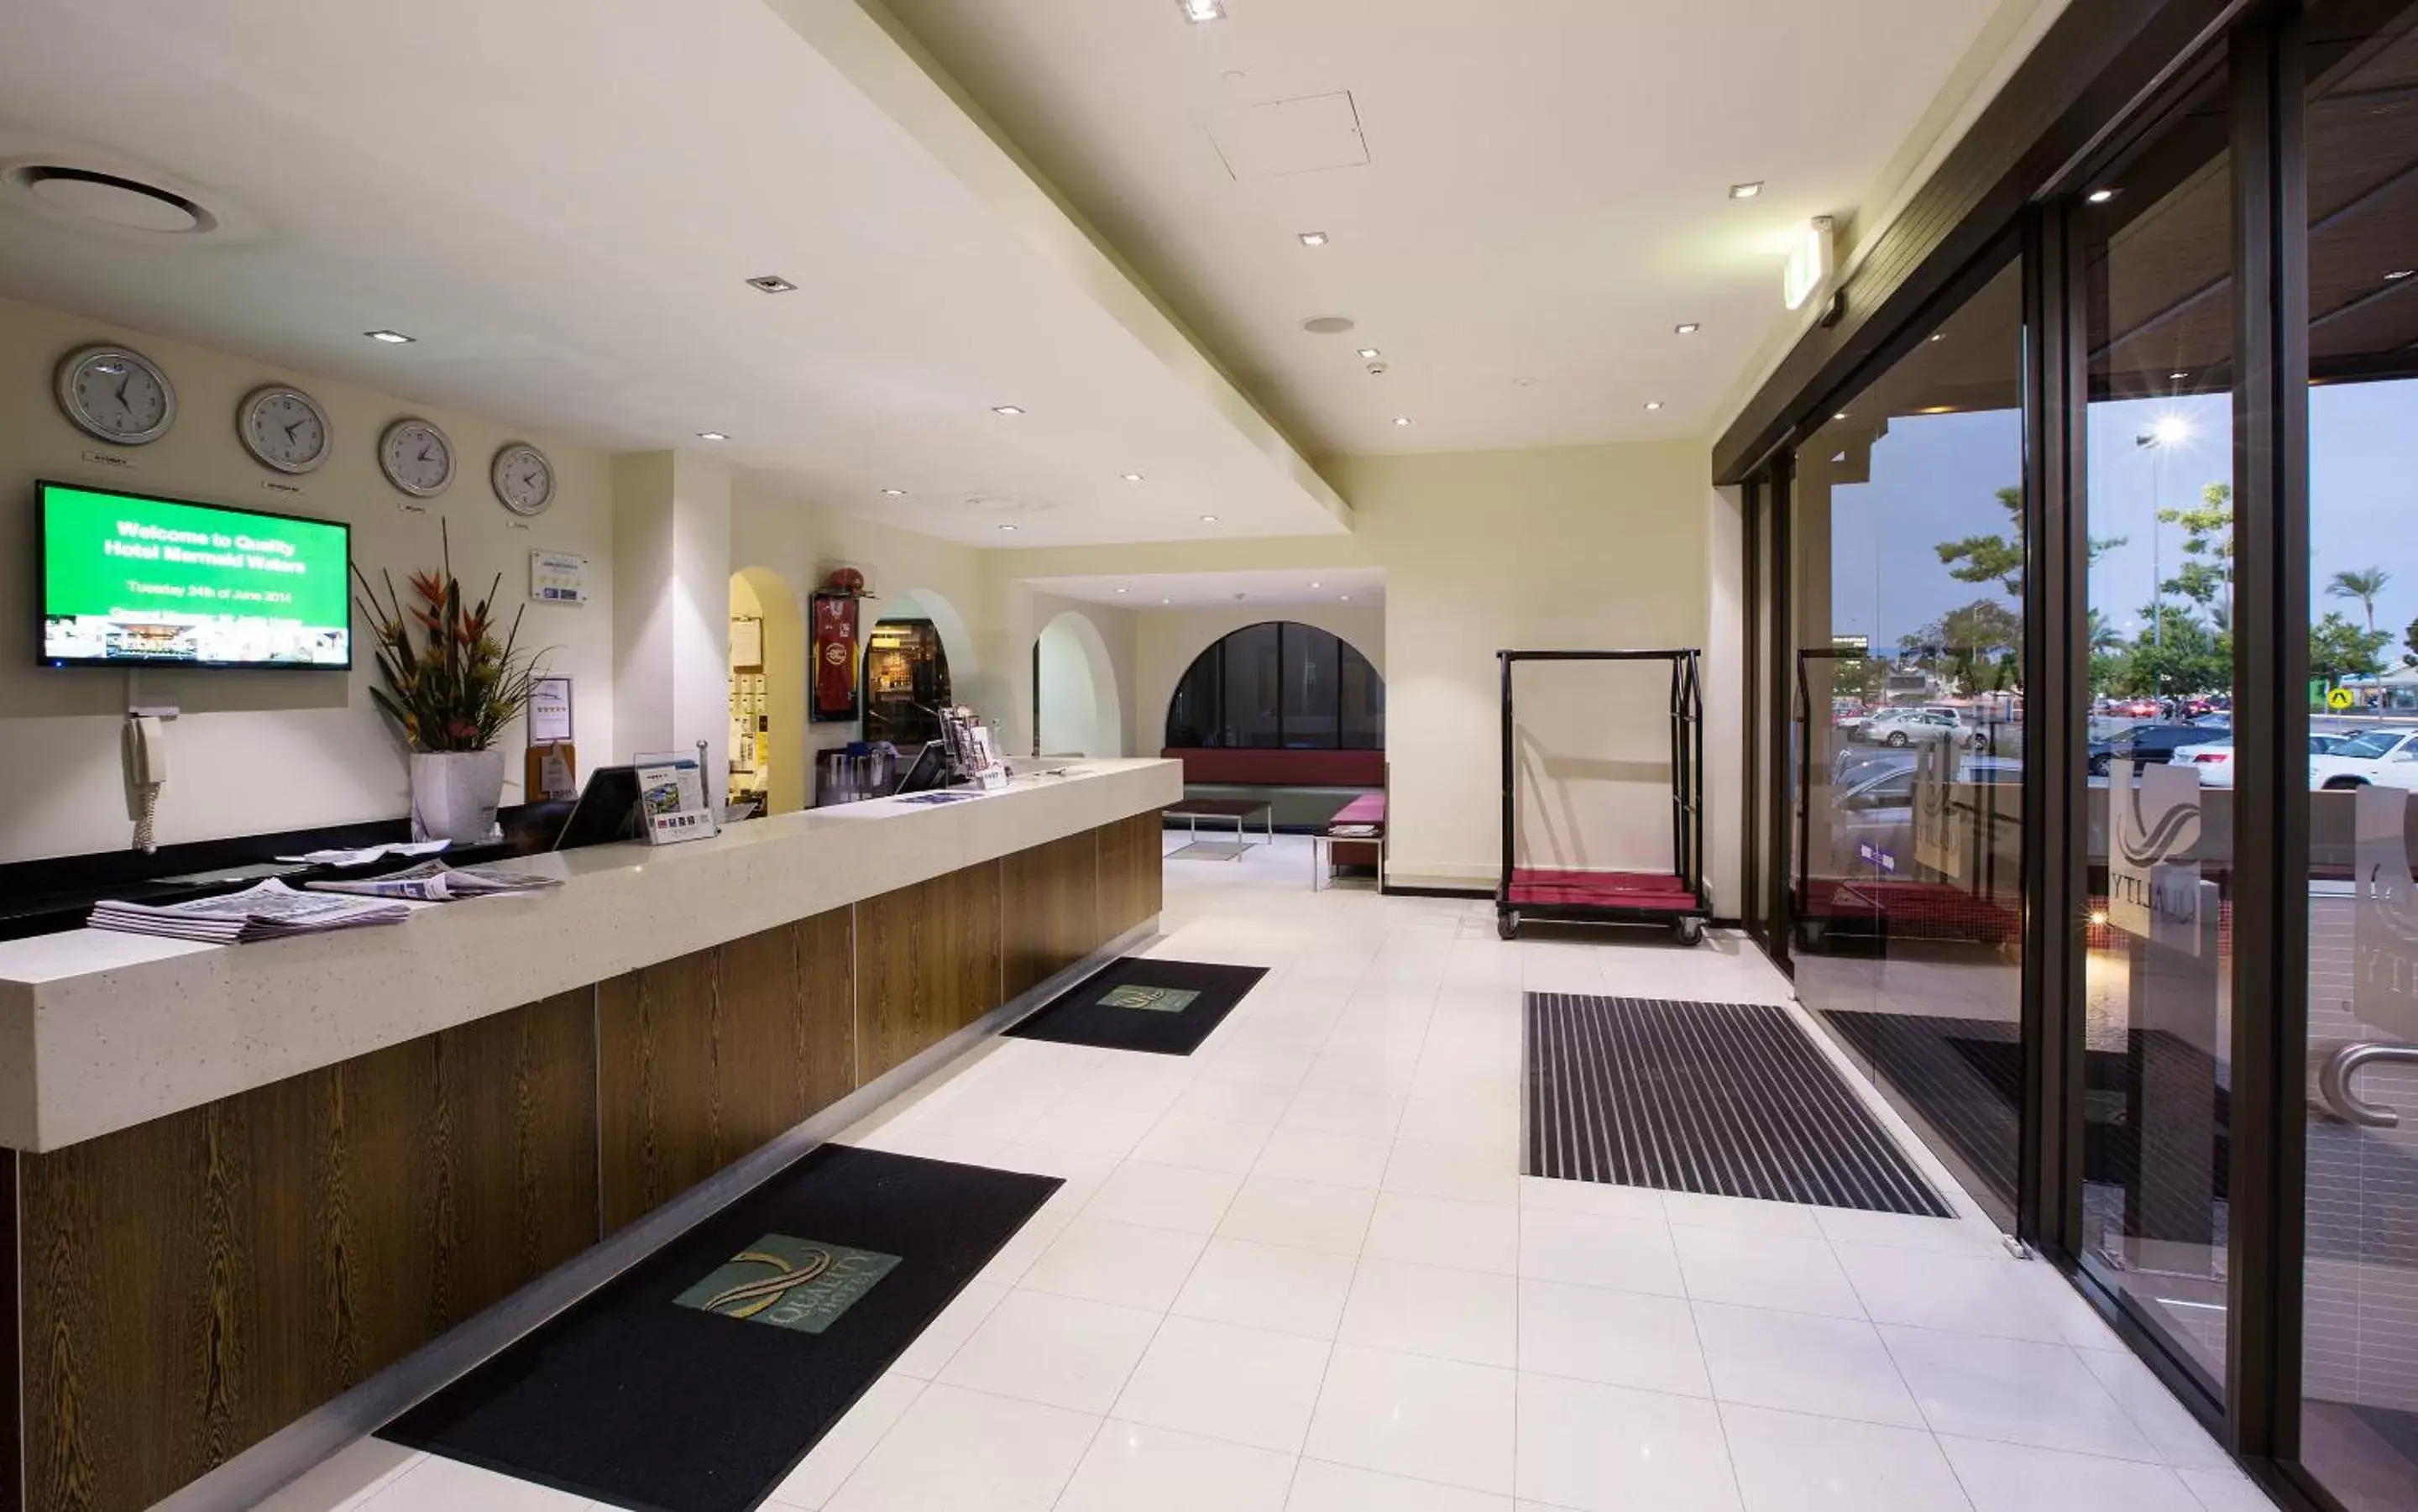 Lobby or reception in Mermaid Waters Hotel by Nightcap Plus